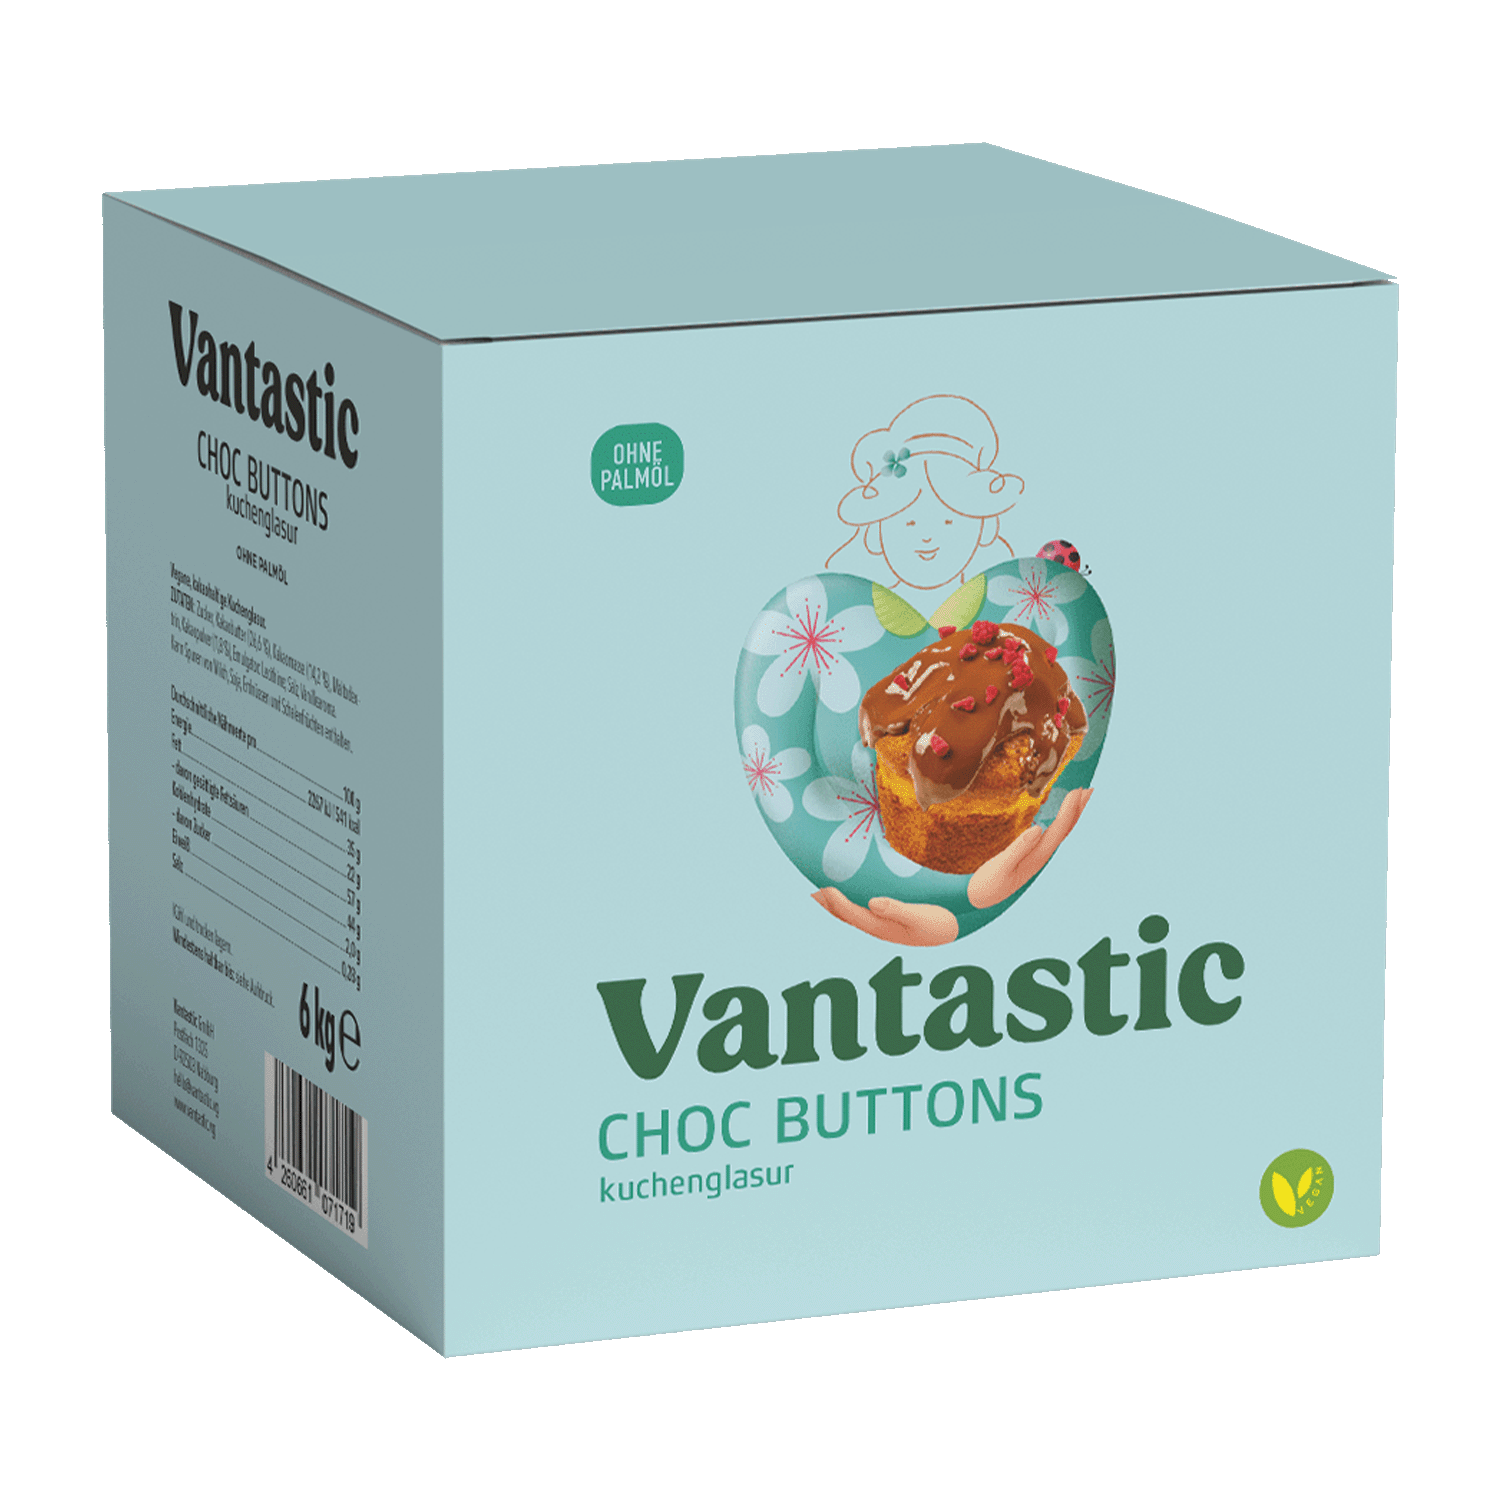 Vantastic Choc Buttons, 6kg